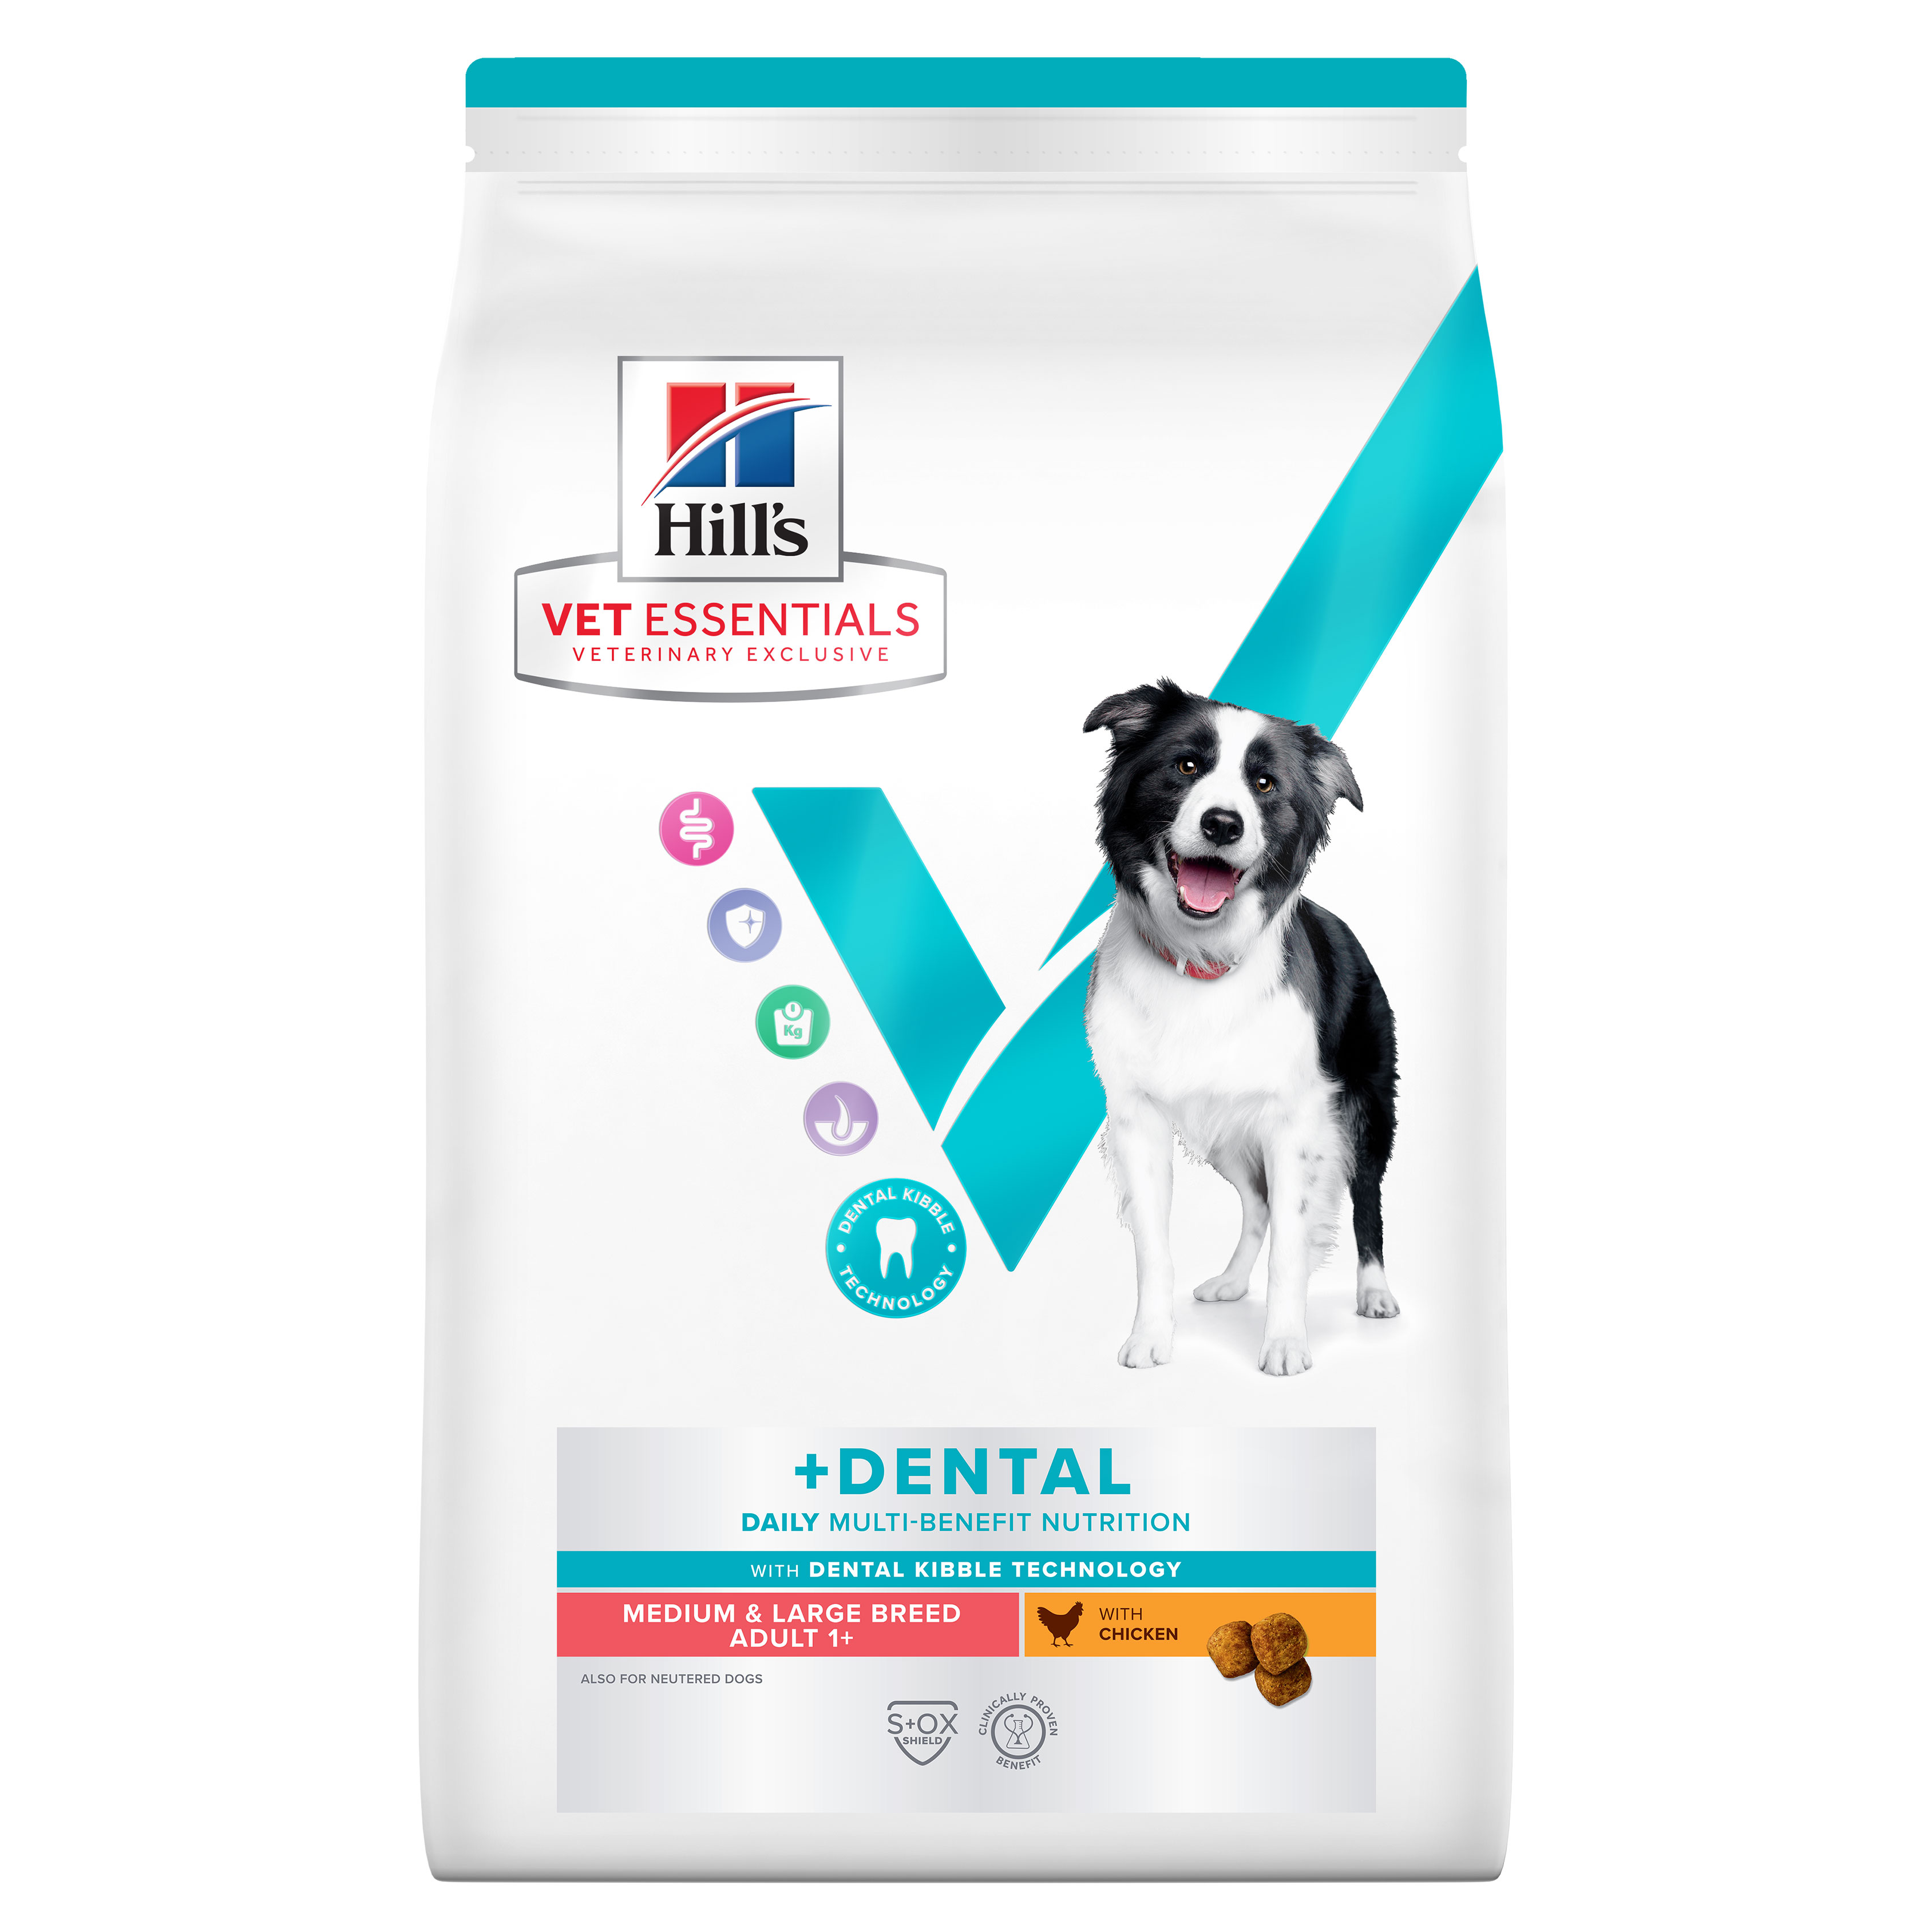 Hill's Vet Essentials מולטי בנפיט כלב בוגר ומבוגר גזע בינוני וגדול, דנטל, 10 ק"ג